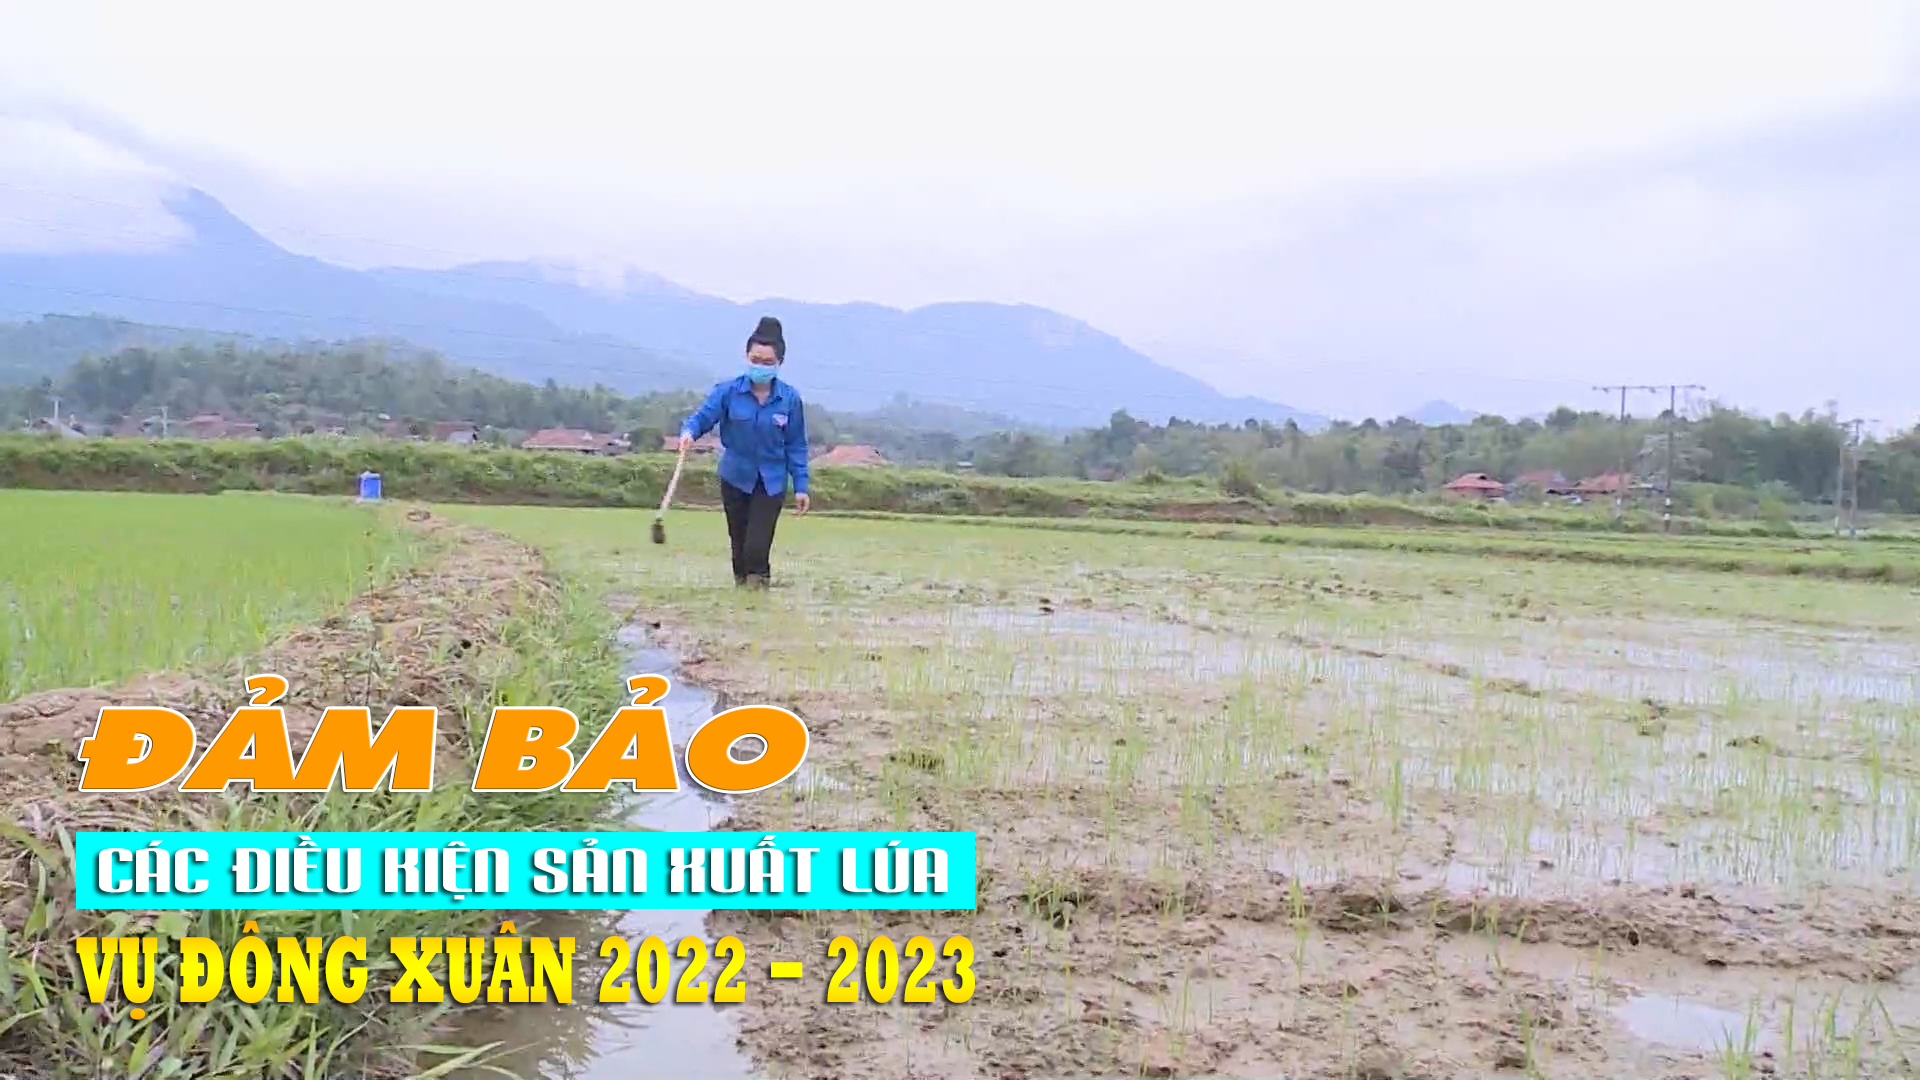 Đảm bảo các điều kiện sản xuất lúa vụ Đông Xuân 2022 - 2023